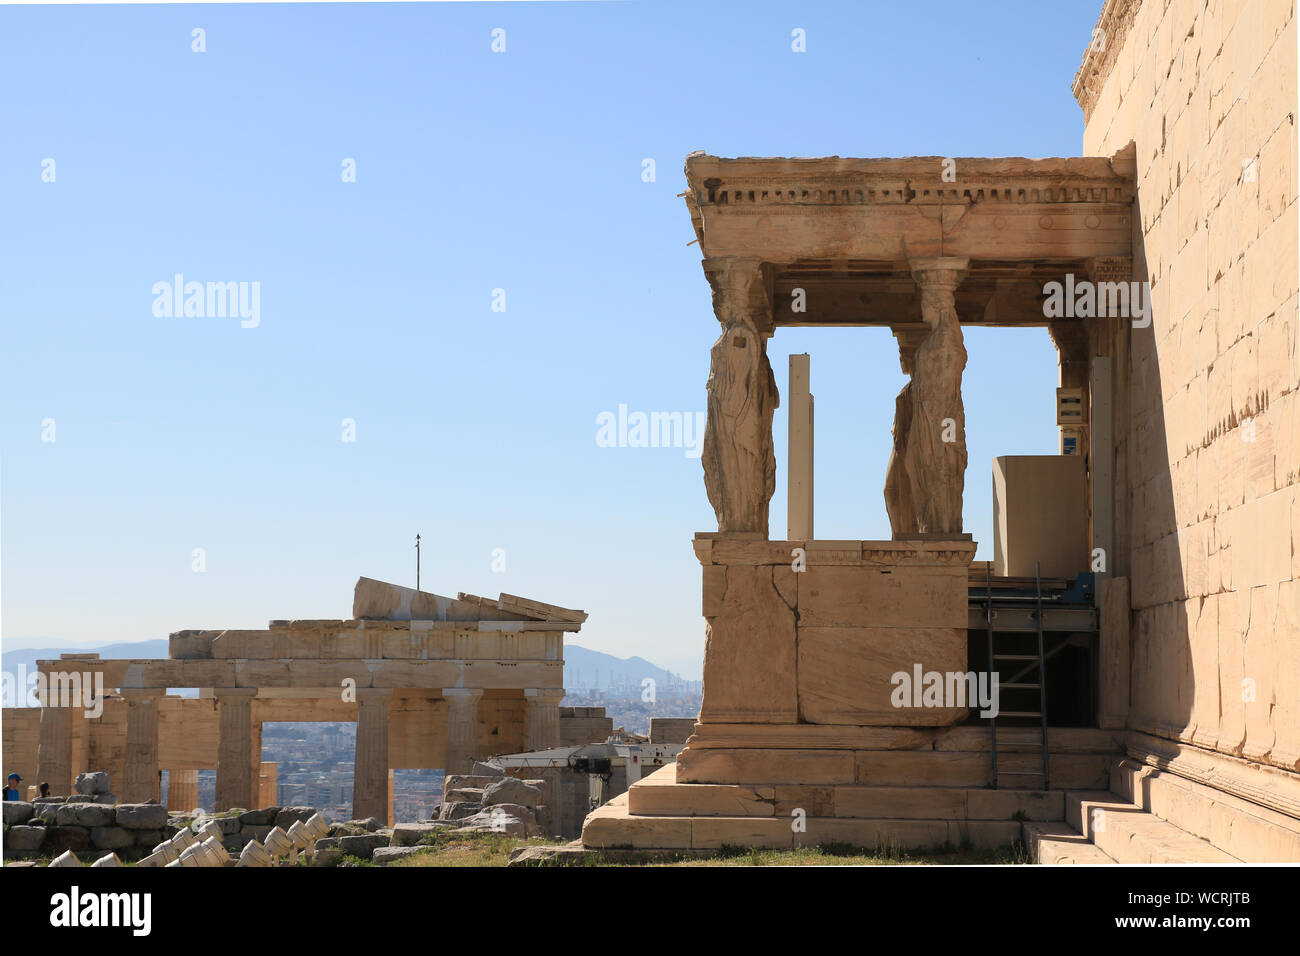 Erechtheion - Acropolis of Athens Stock Photo